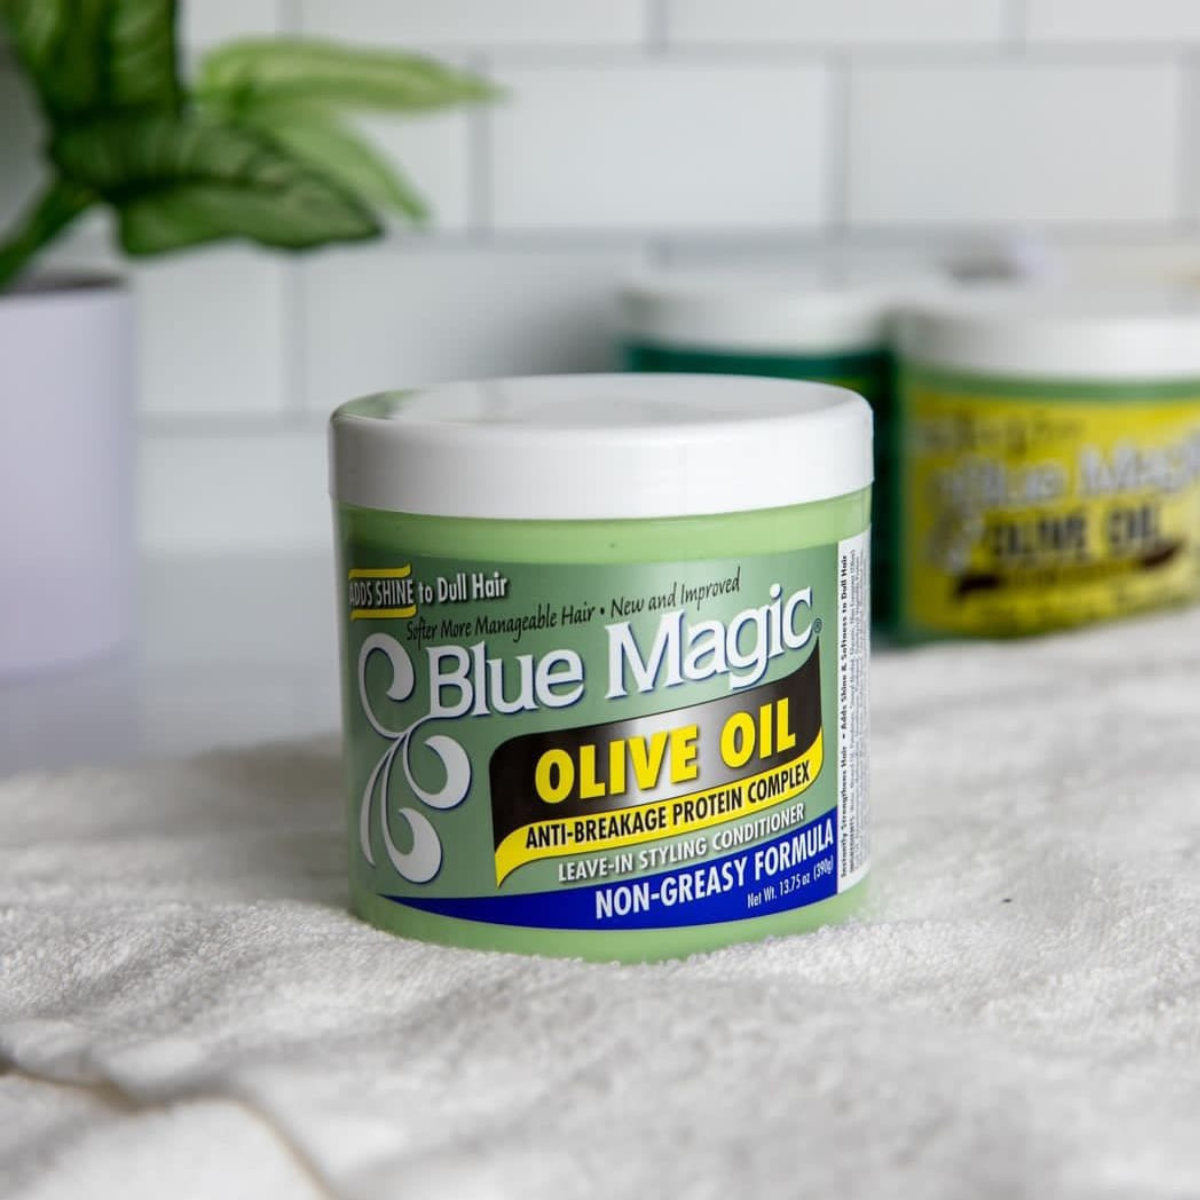 blue Magic olive oil comprar en onlineshoppingcenterg Colombia centro de compras en linea osc